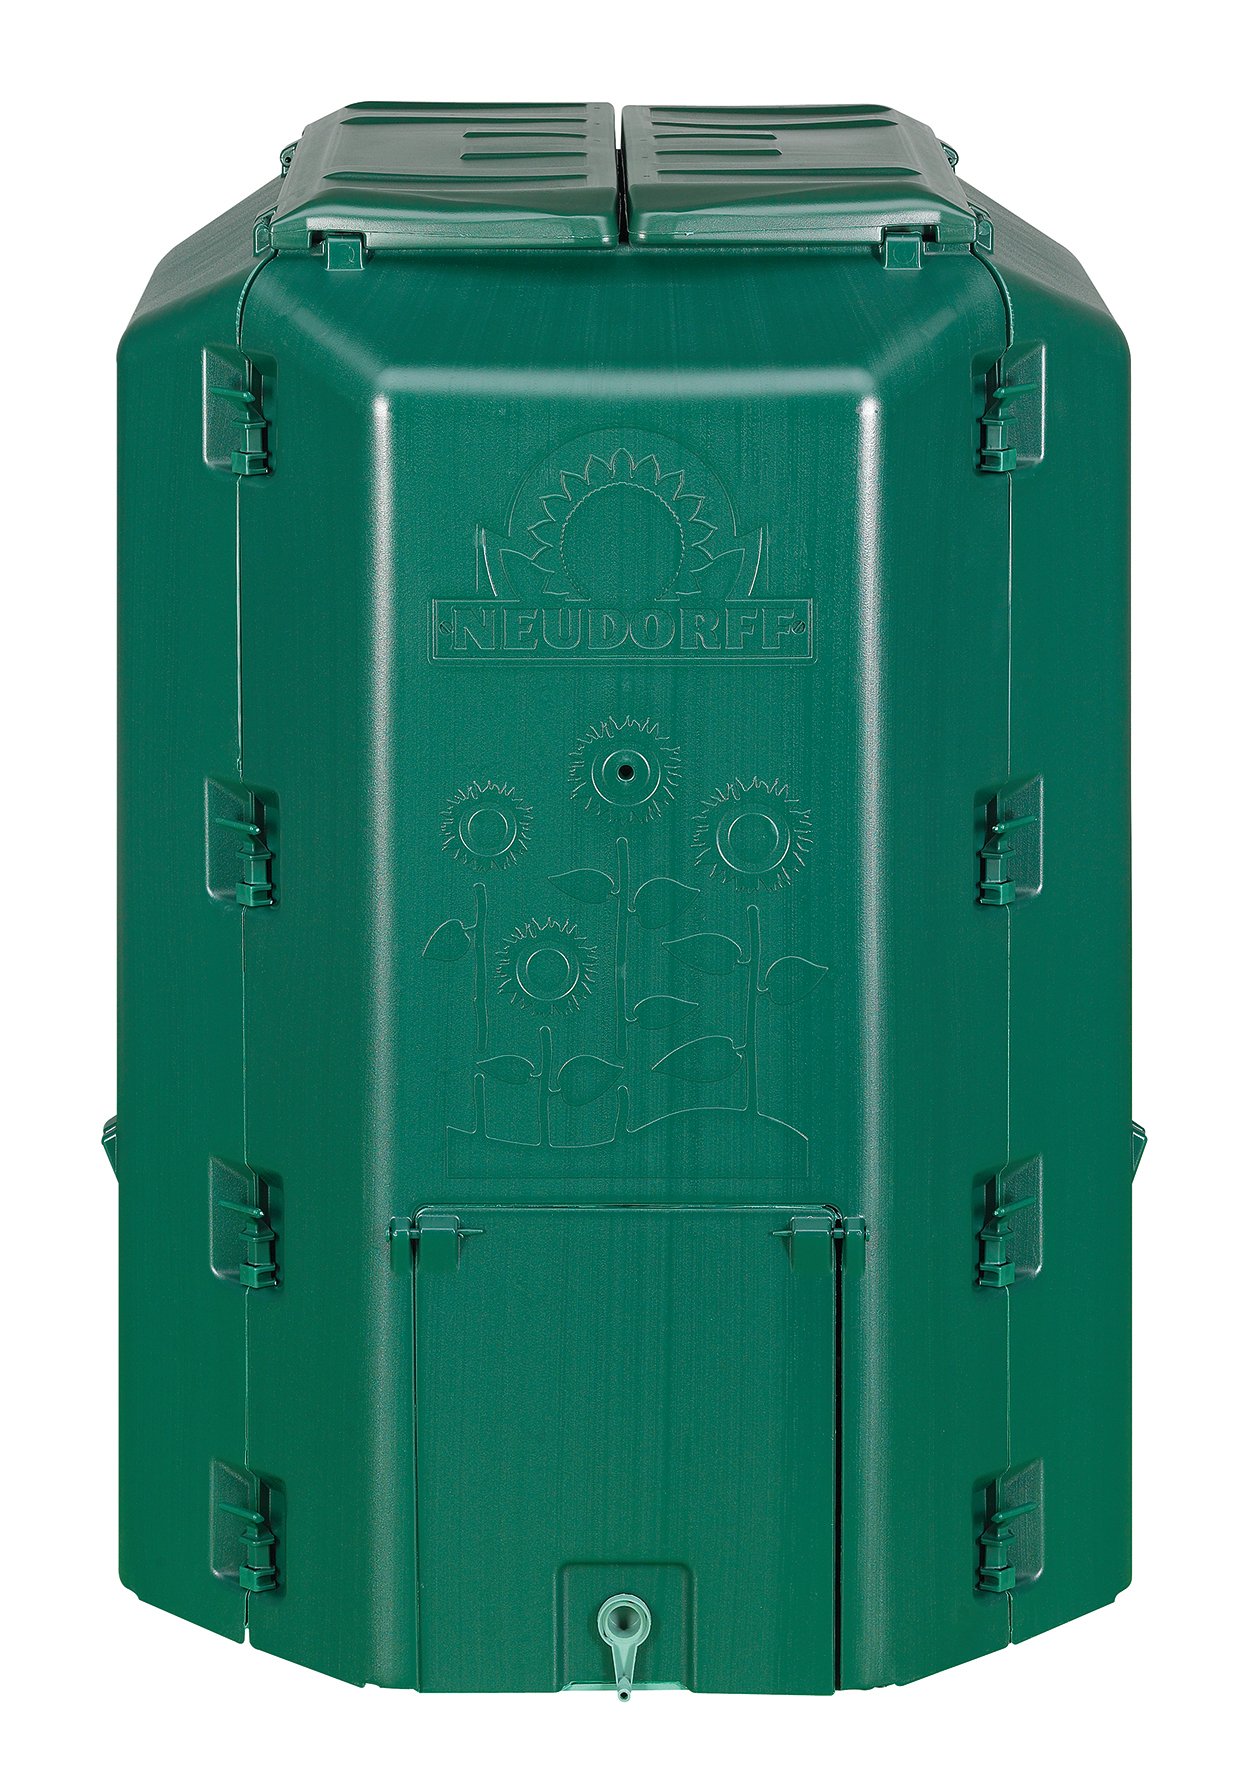 NEUDORFF - Thermokomposter "DuoTherm" 530 L. Wetterfester und UV-beständiger Komposter mit Recycling Kunststoff zur schnellen Kompostierung von Garten- und Küchenabfällen.